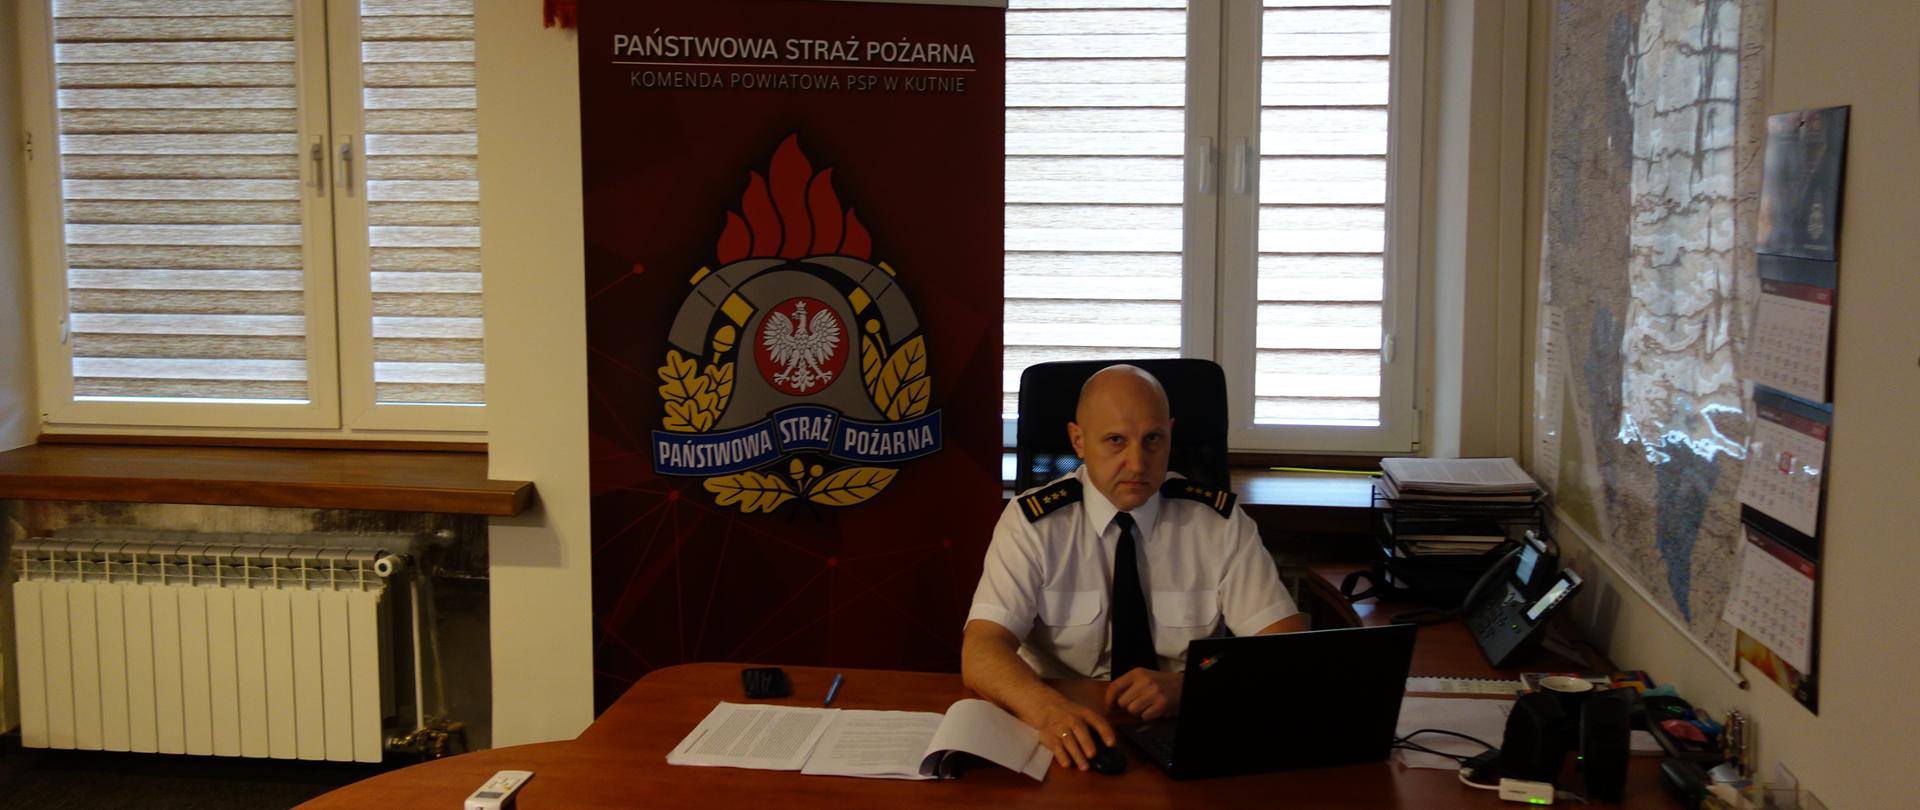 Pomieszczenie gabinetu komendanta Powiatowego PSP w Kutnie. Osoba Komendanta w białej koszuli wyjściowej prowadzi przy użyciu laptopa wideokonferencję. W tle za osobą komendanta baner z logo Państwowej Straży Pożarnej.